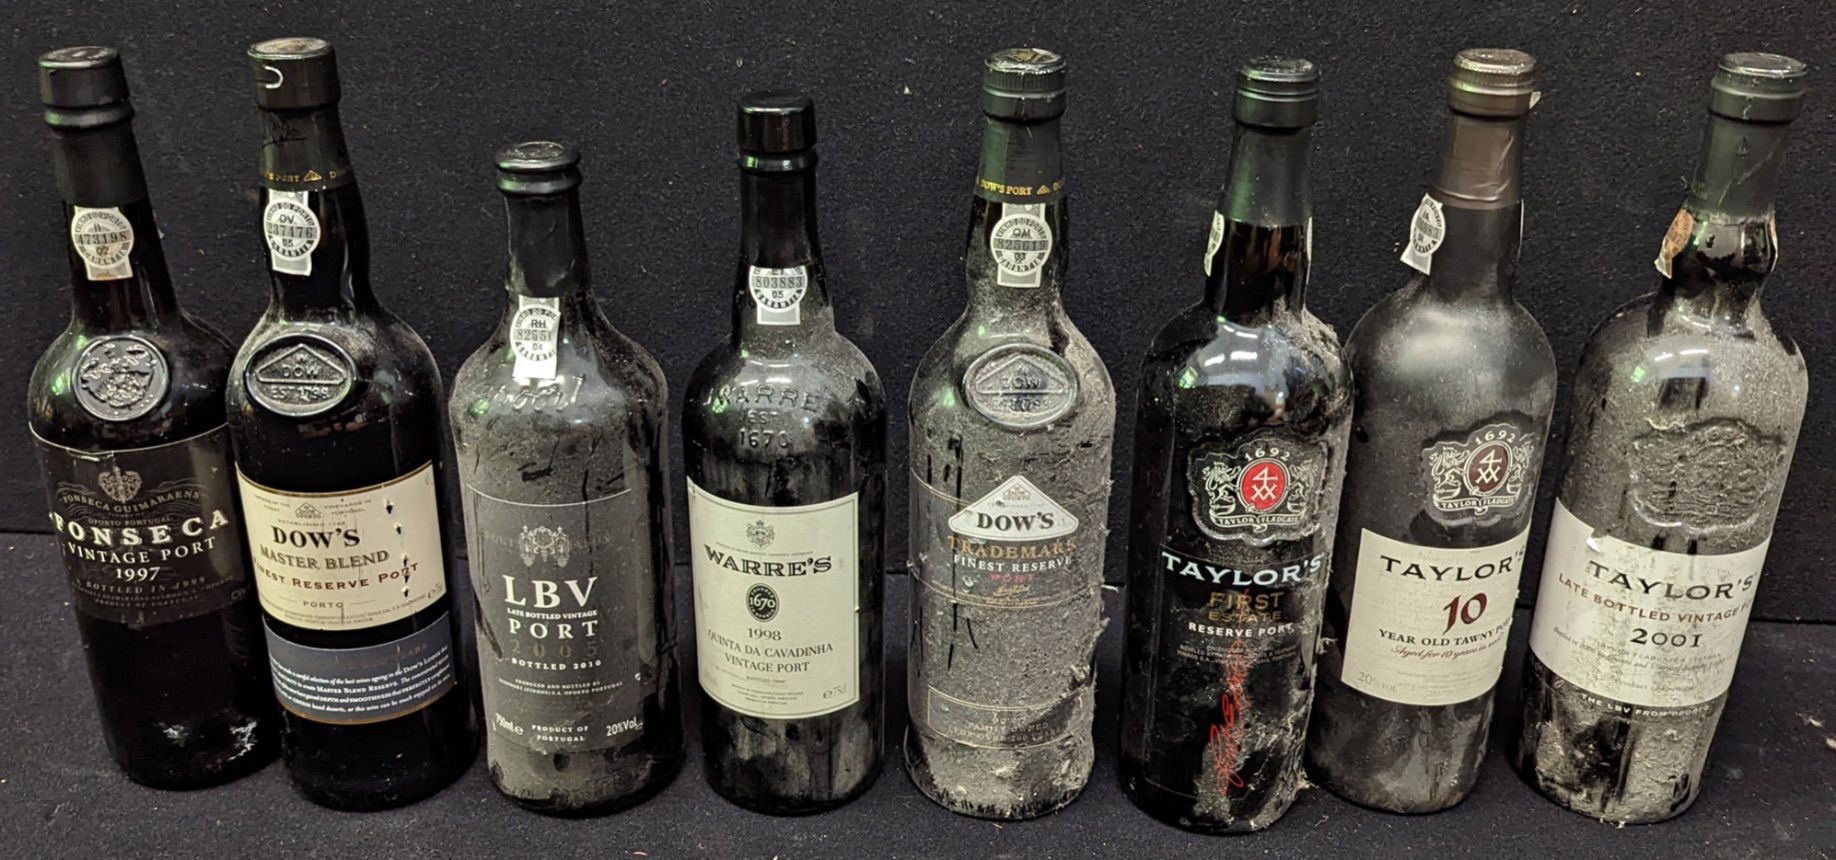 Taylors 8 botellas de Oporto que incluyen Taylor's, Dow's, Warre's, etc.